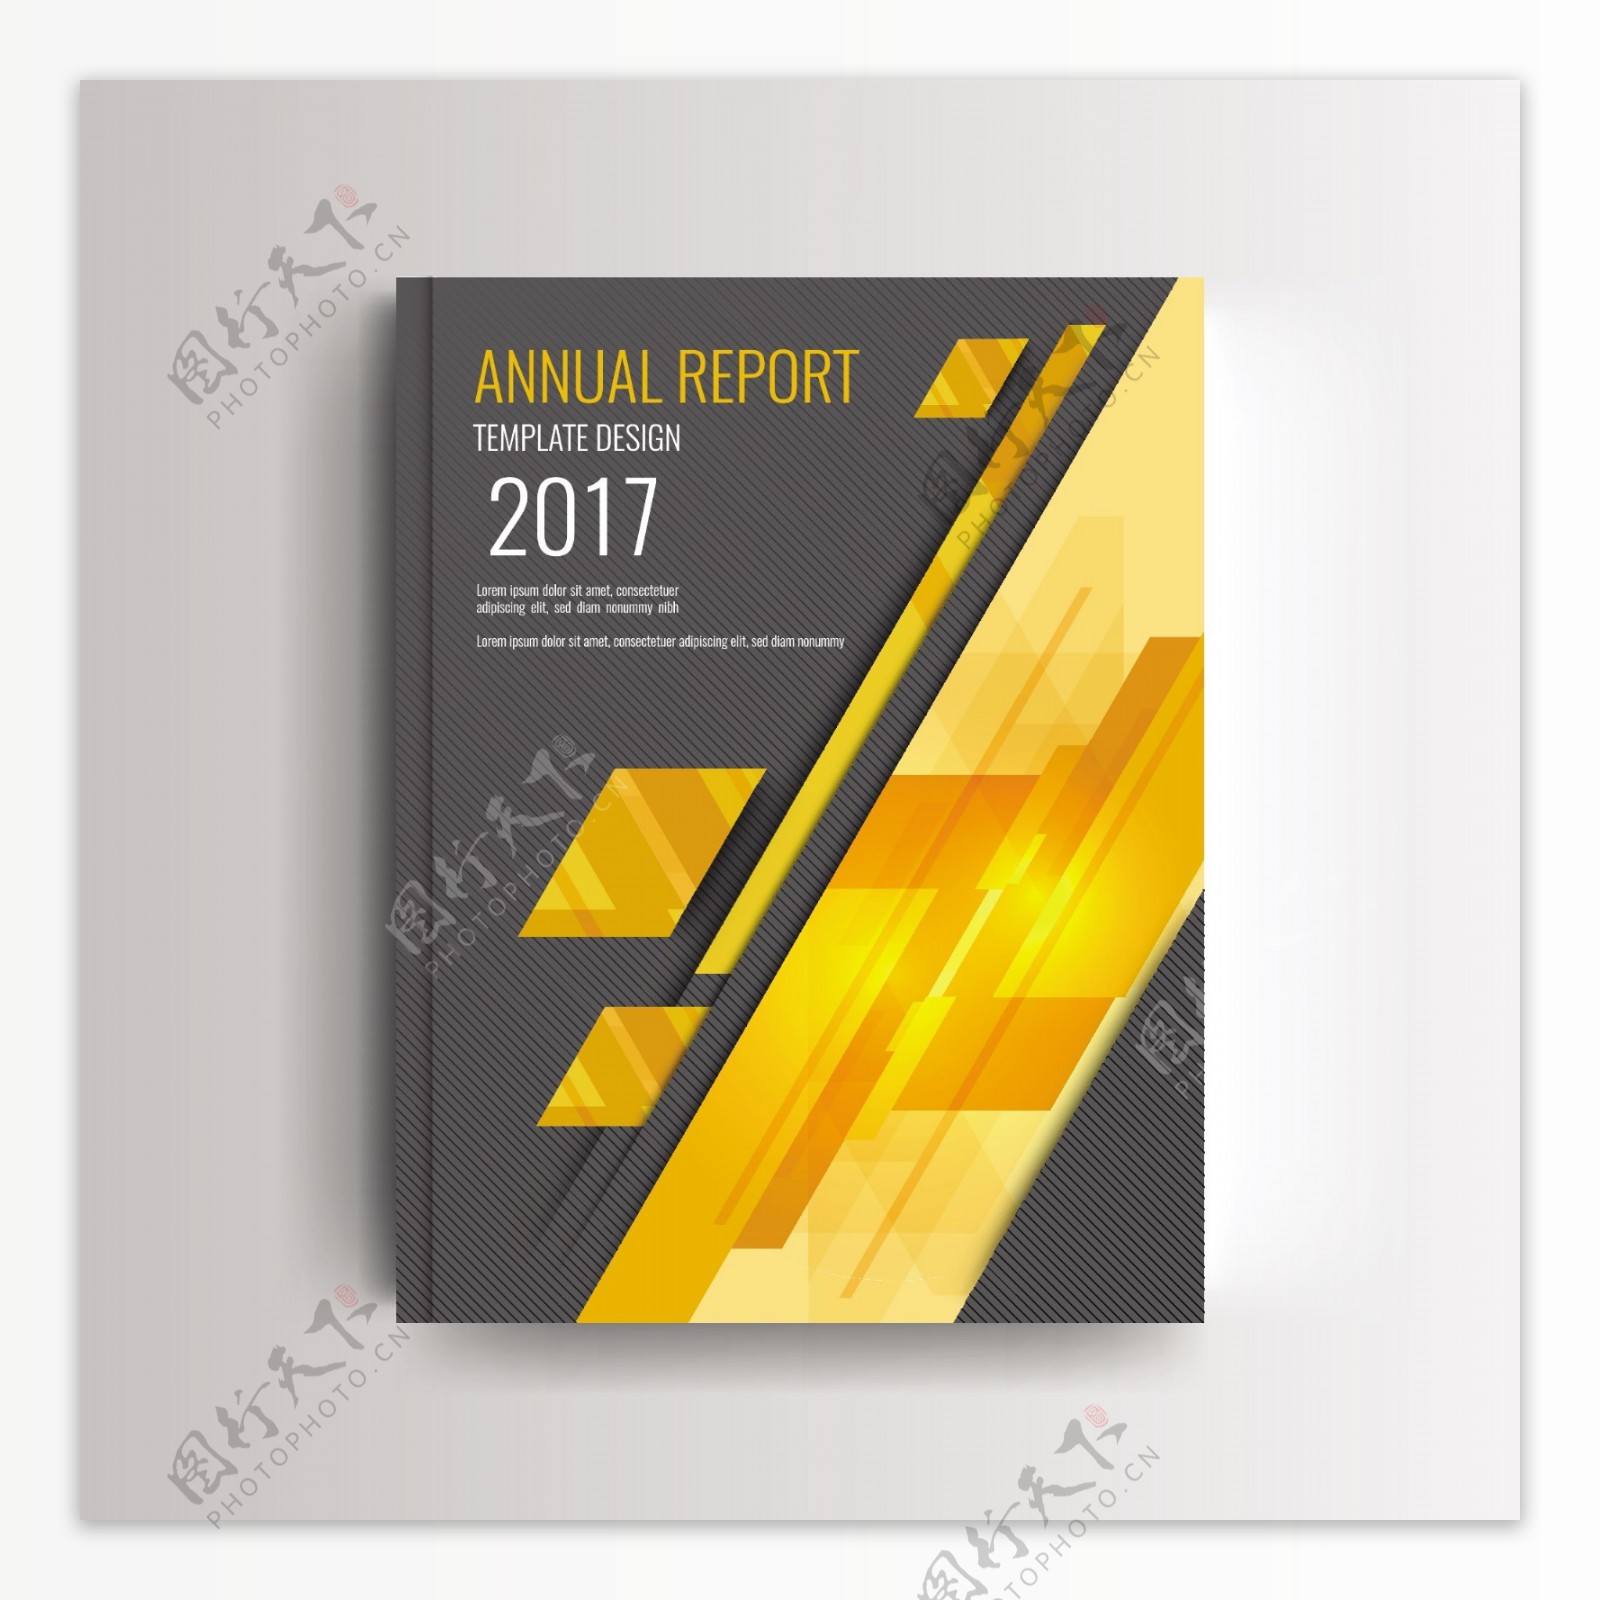 一份现代年度报告封面上有亮黄色抽象形状的模板